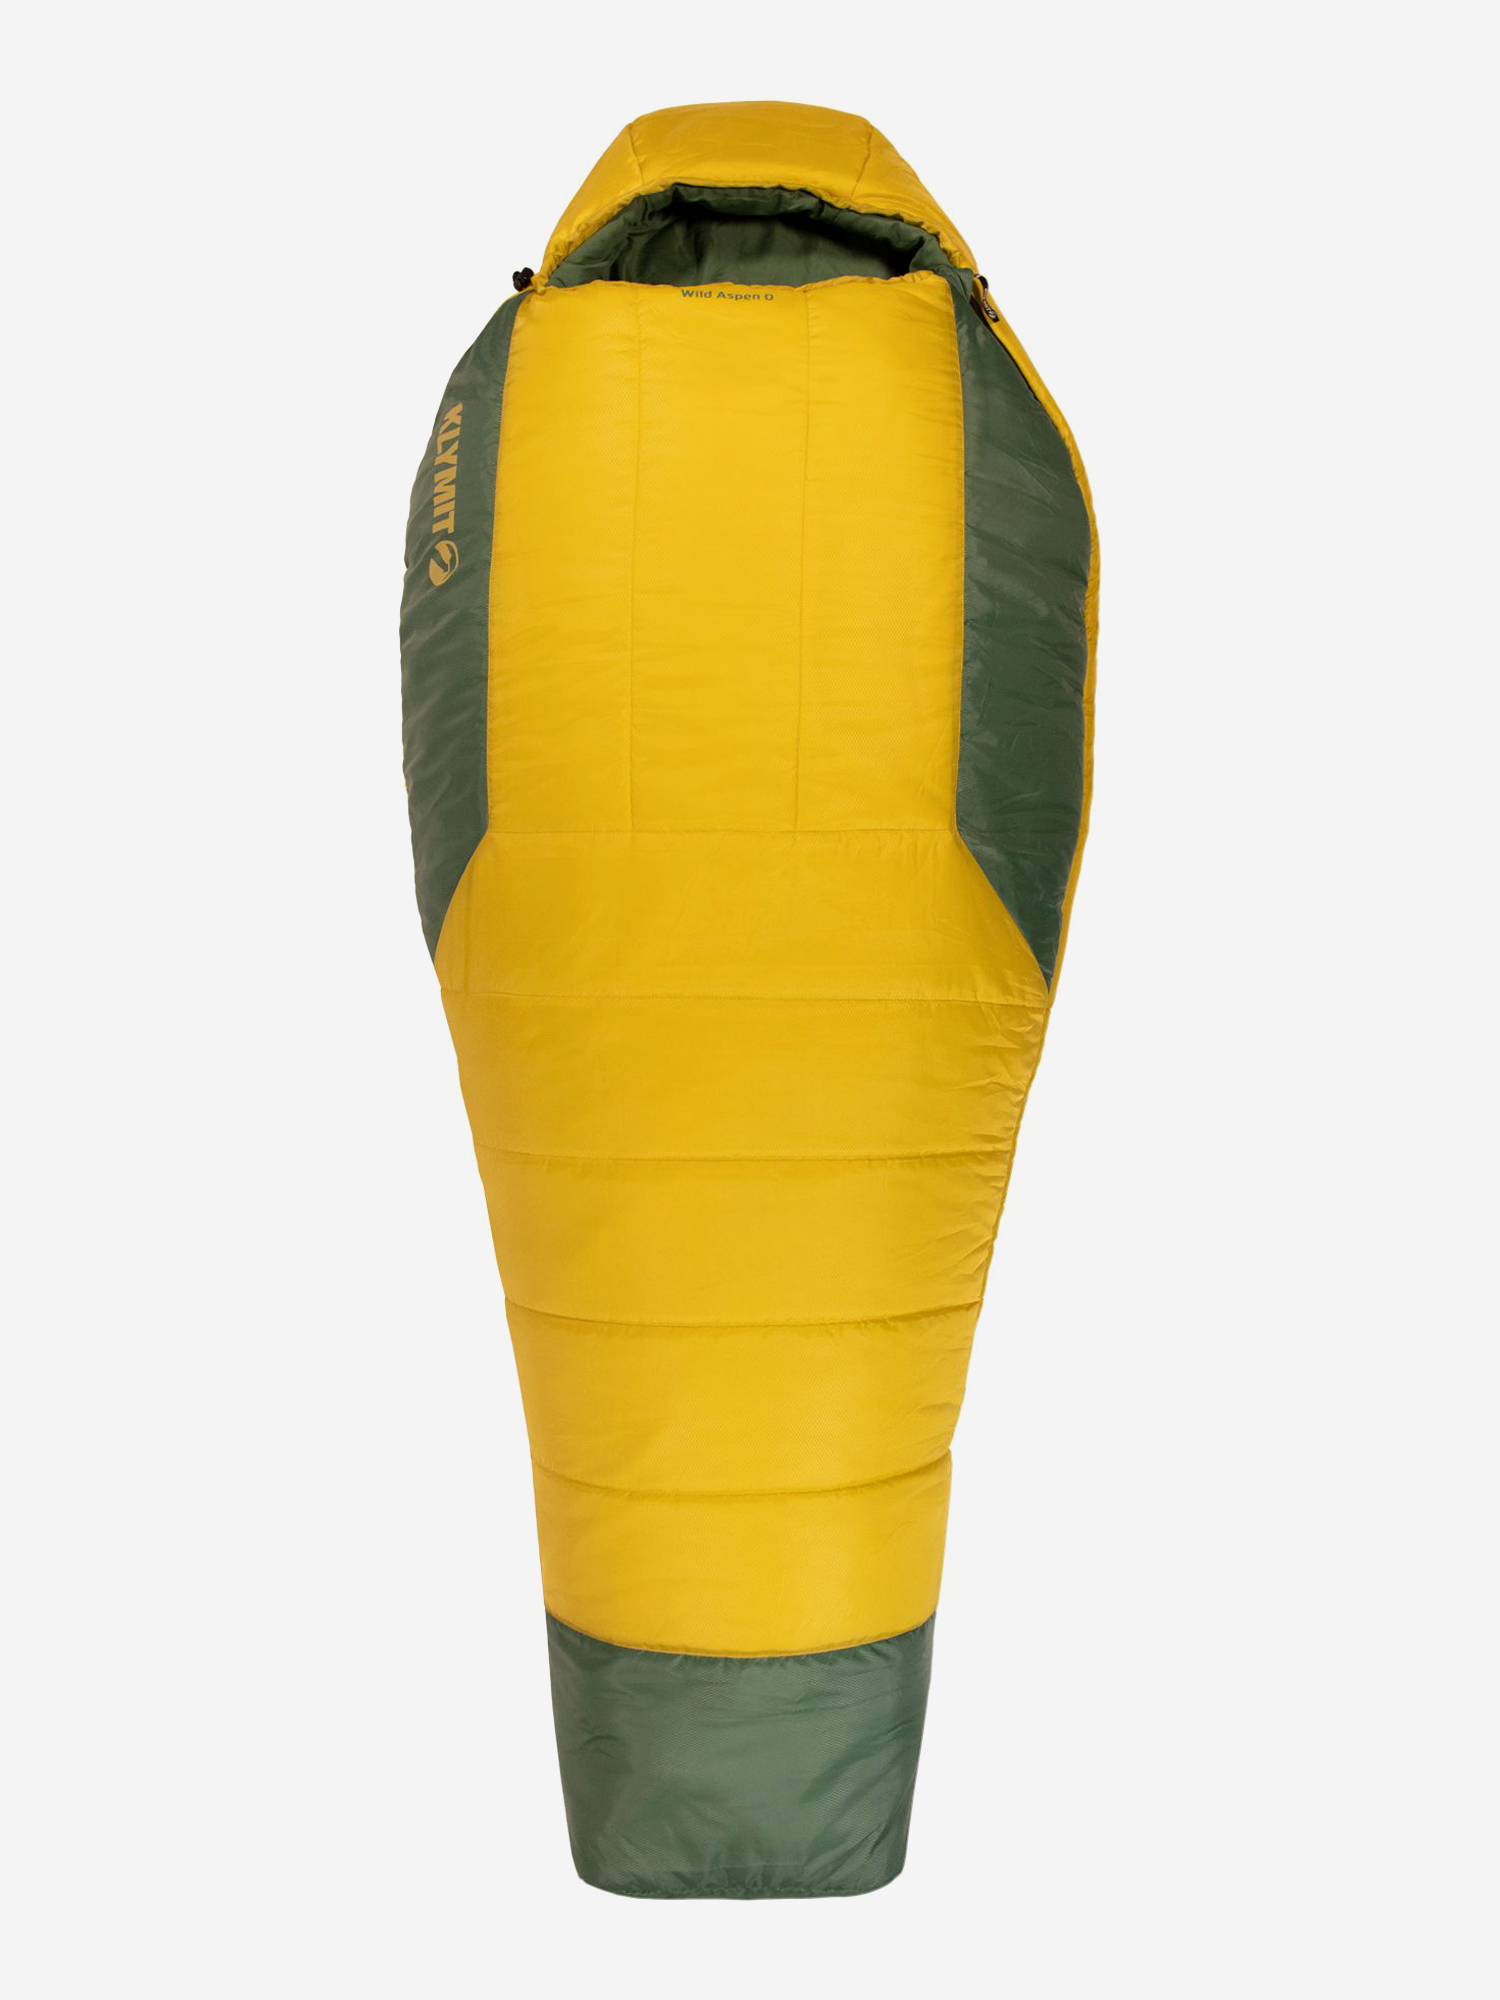 Спальный мешок KLYMIT Wild Aspen 0 Large (13WAYL00D) желто-зеленый, Желтый очки для плавания взрослые с зеркальными стёклами sportex b31549 a желто голубой